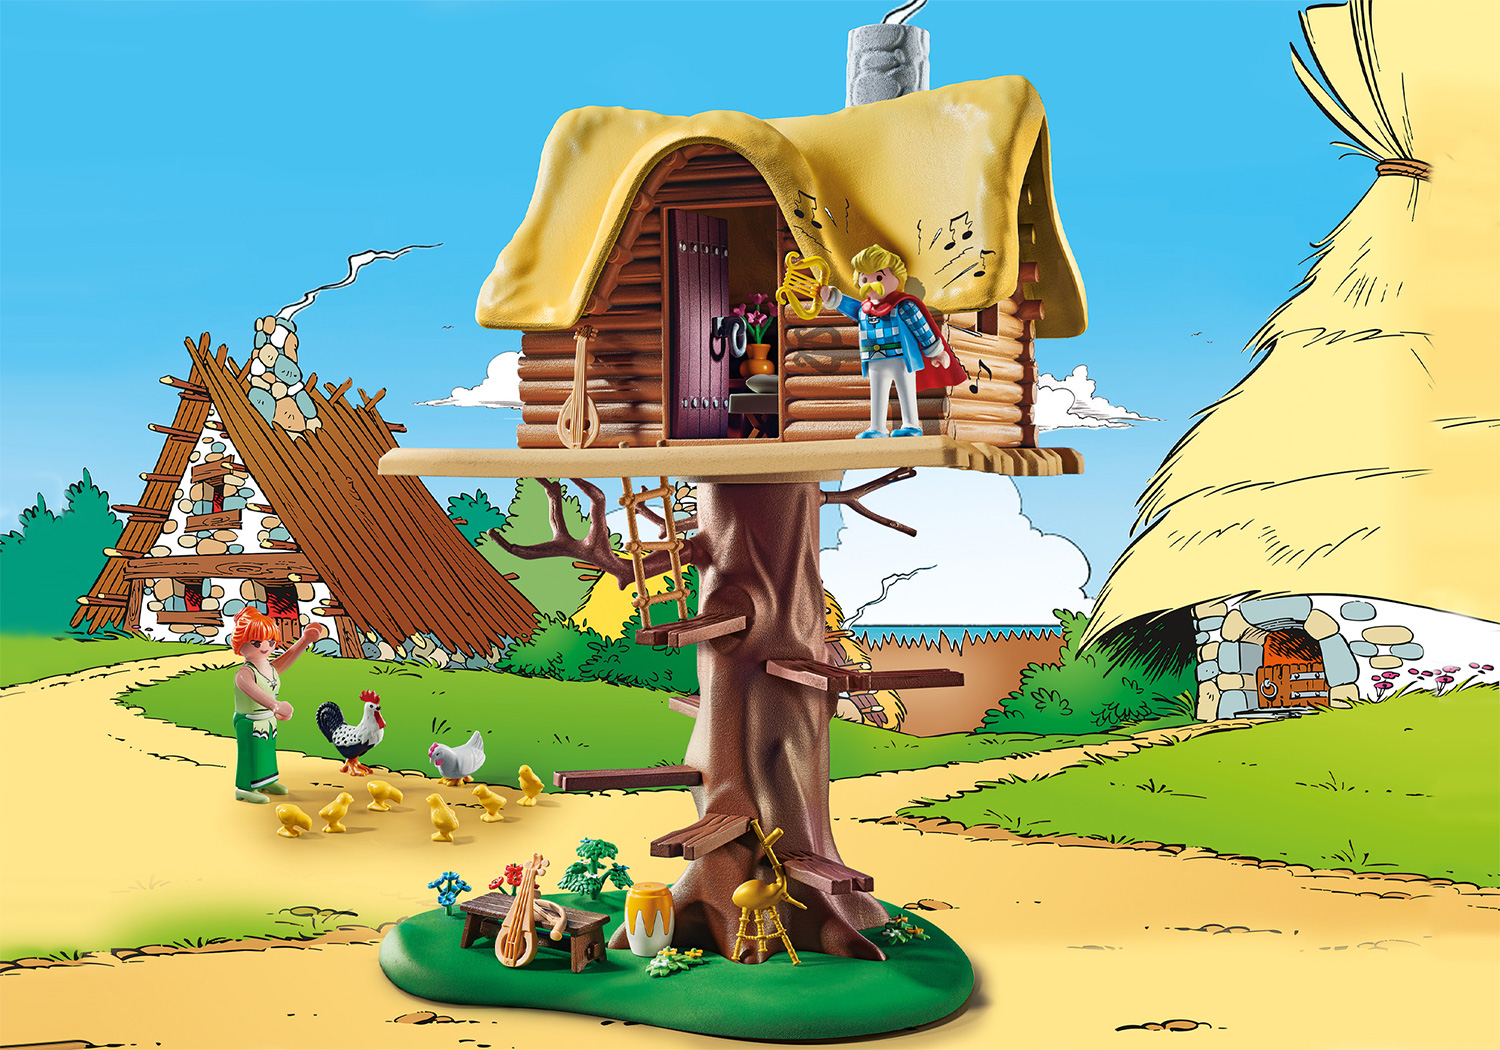 PLAYMOBIL 71016 Baumhaus Troubadix Spielset, Asterix: mit Mehrfarbig